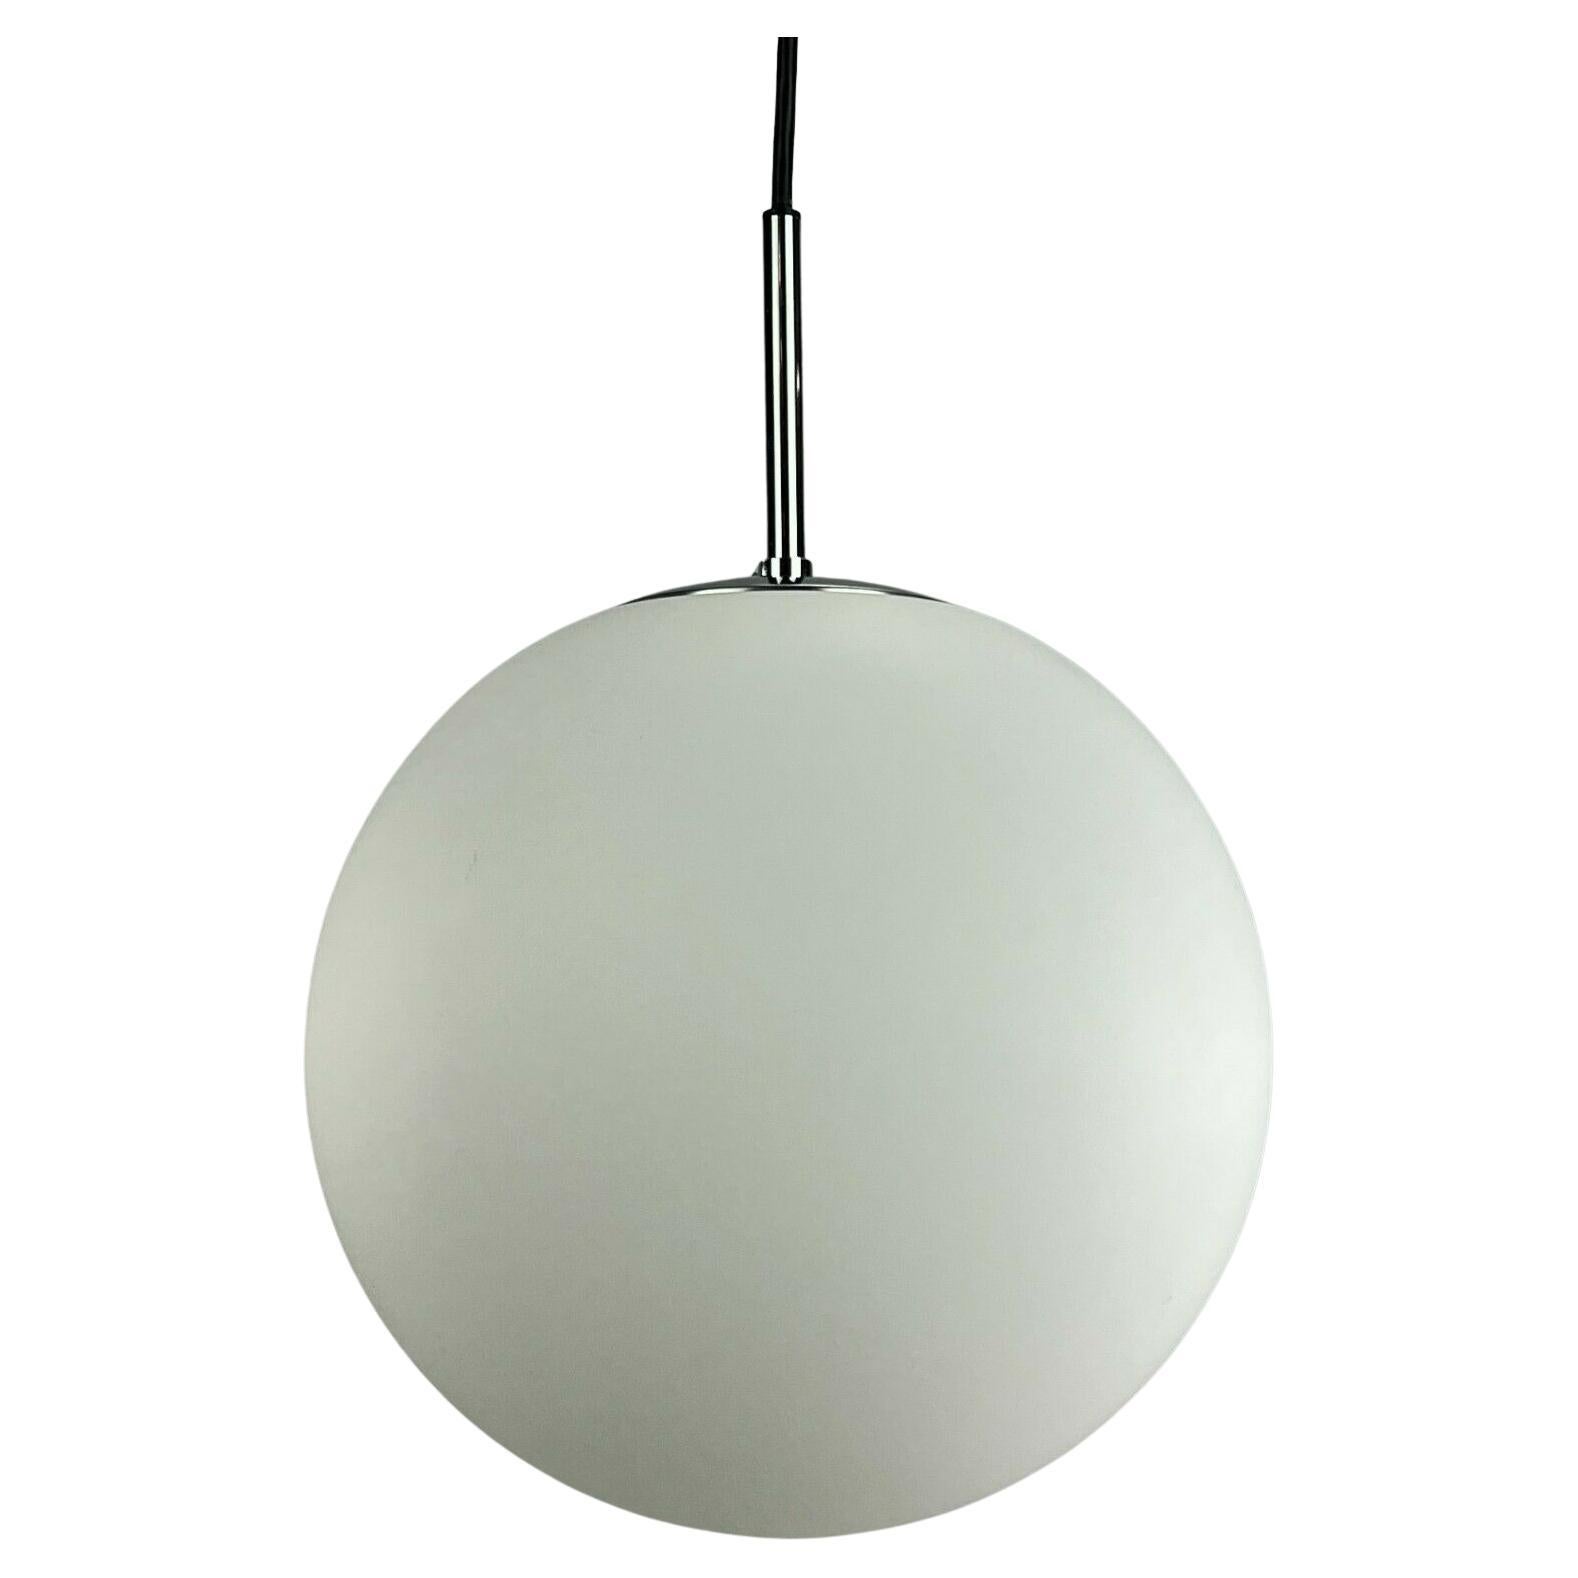 60s 70s Lamp Light Ceiling Lamp Limburg Spherical Lamp Ball Design 60s